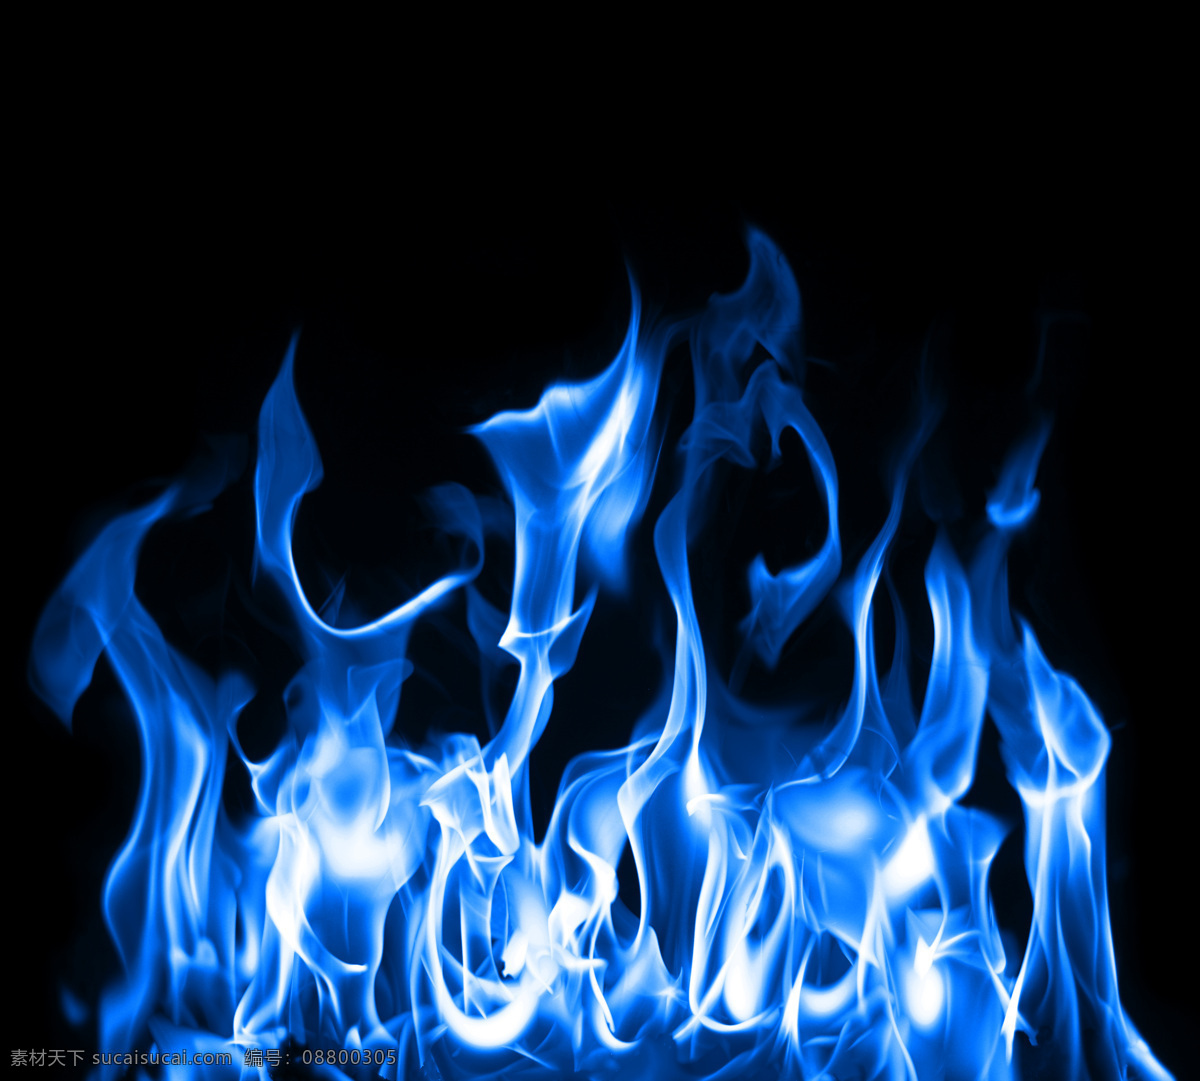 蓝色火焰 燃烧的火焰 火焰 燃烧 火焰背景 红色火焰 动感火焰 漂亮的火焰 跳动的火焰 火光 跳动 烈焰效果 跳跃 烈火 大火 火苗 背景底纹